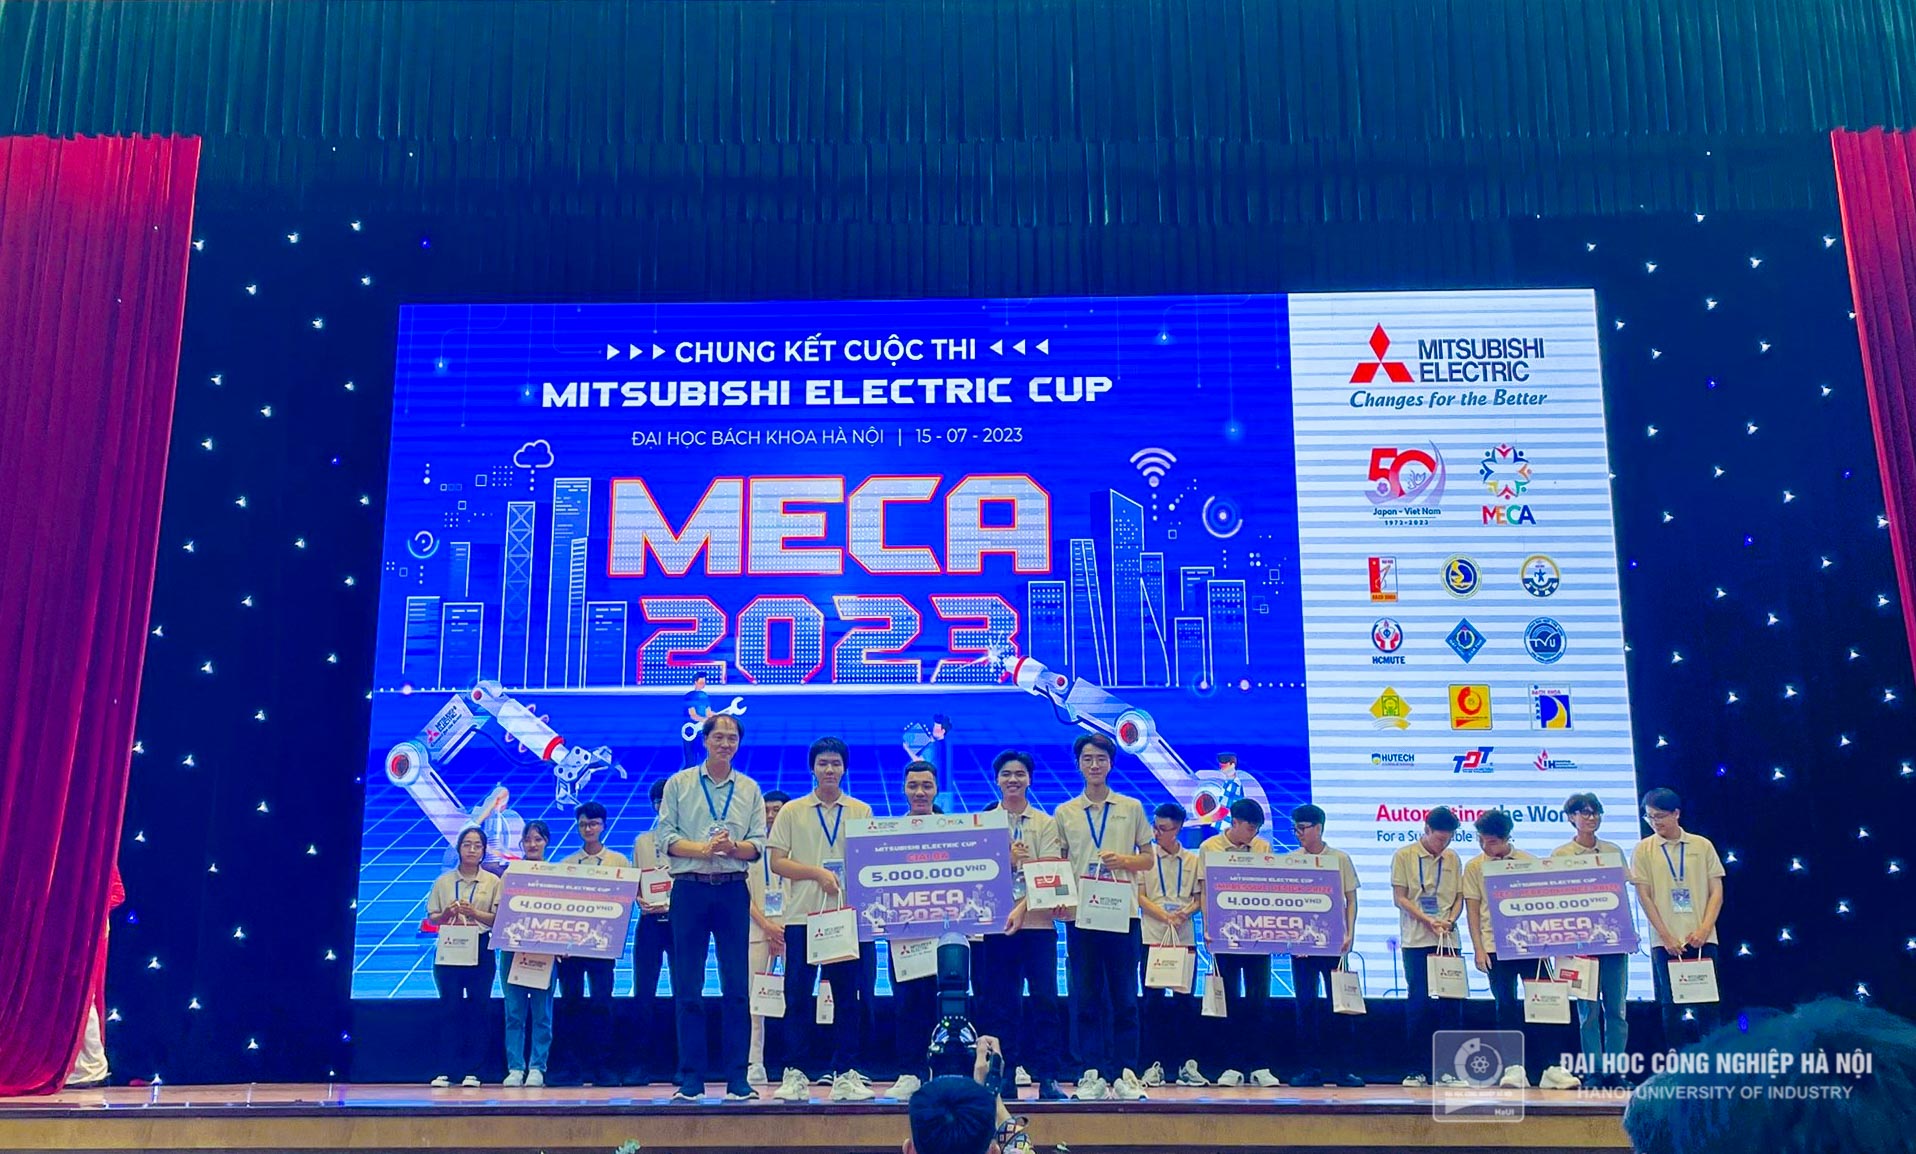 Sinh viên Đại học Công nghiệp Hà Nội xuất sắc giành giải Ba Cuộc thi MECA 2023